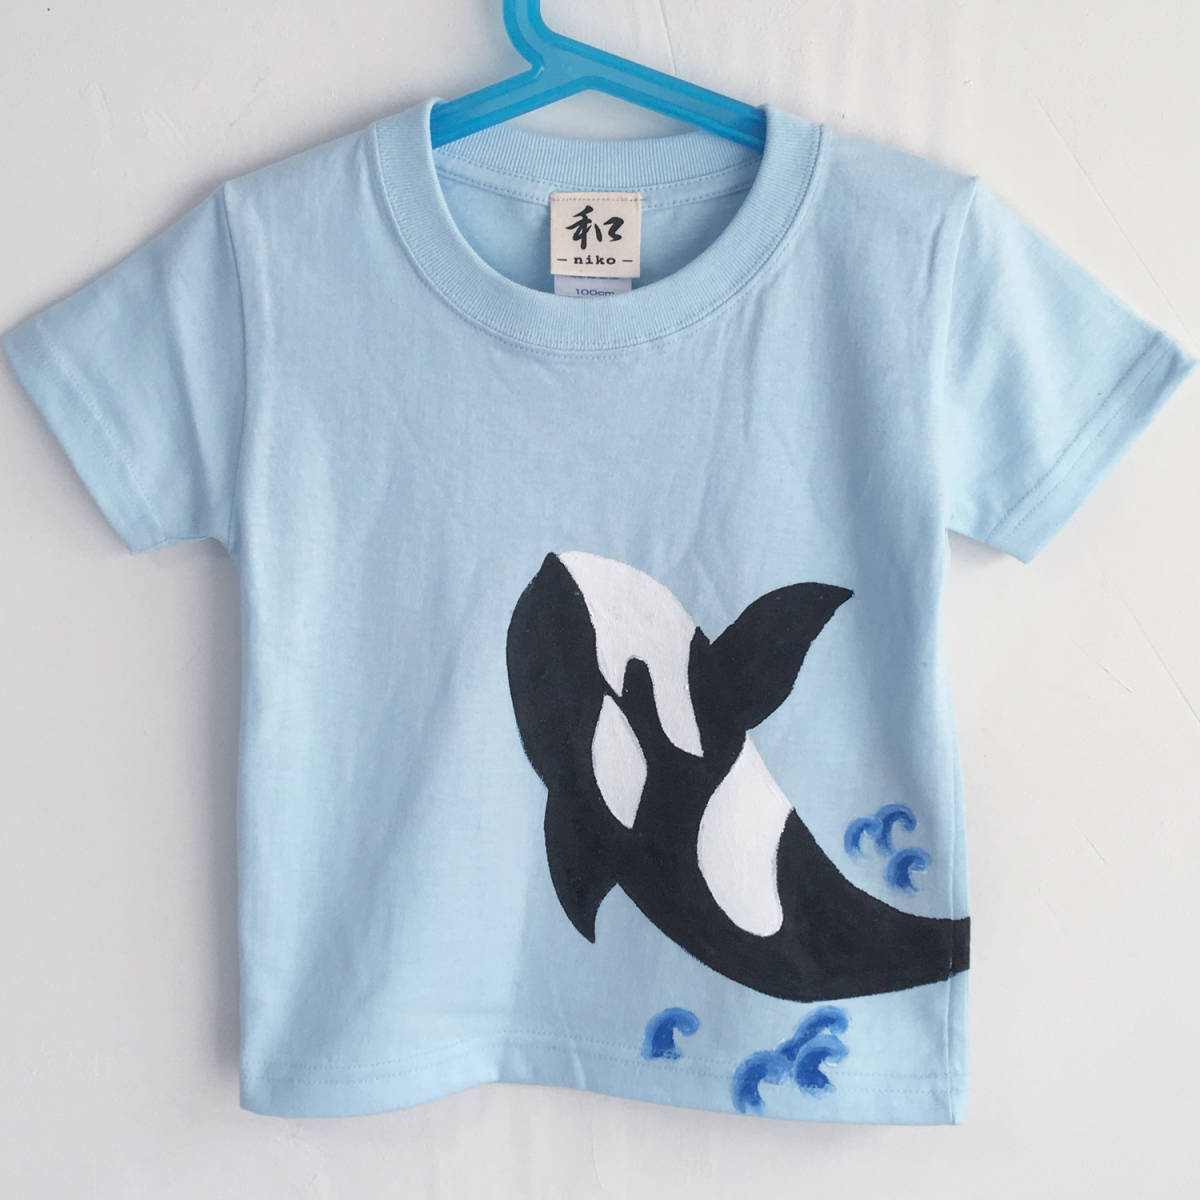 儿童T恤, 尺寸 150, 蓝色的, 虎鲸T恤, 手绘虎鲸T恤, 短袖, 动物, 儿童服装, 手工制作的, 最高额, 短袖T恤, 150(145~154厘米)